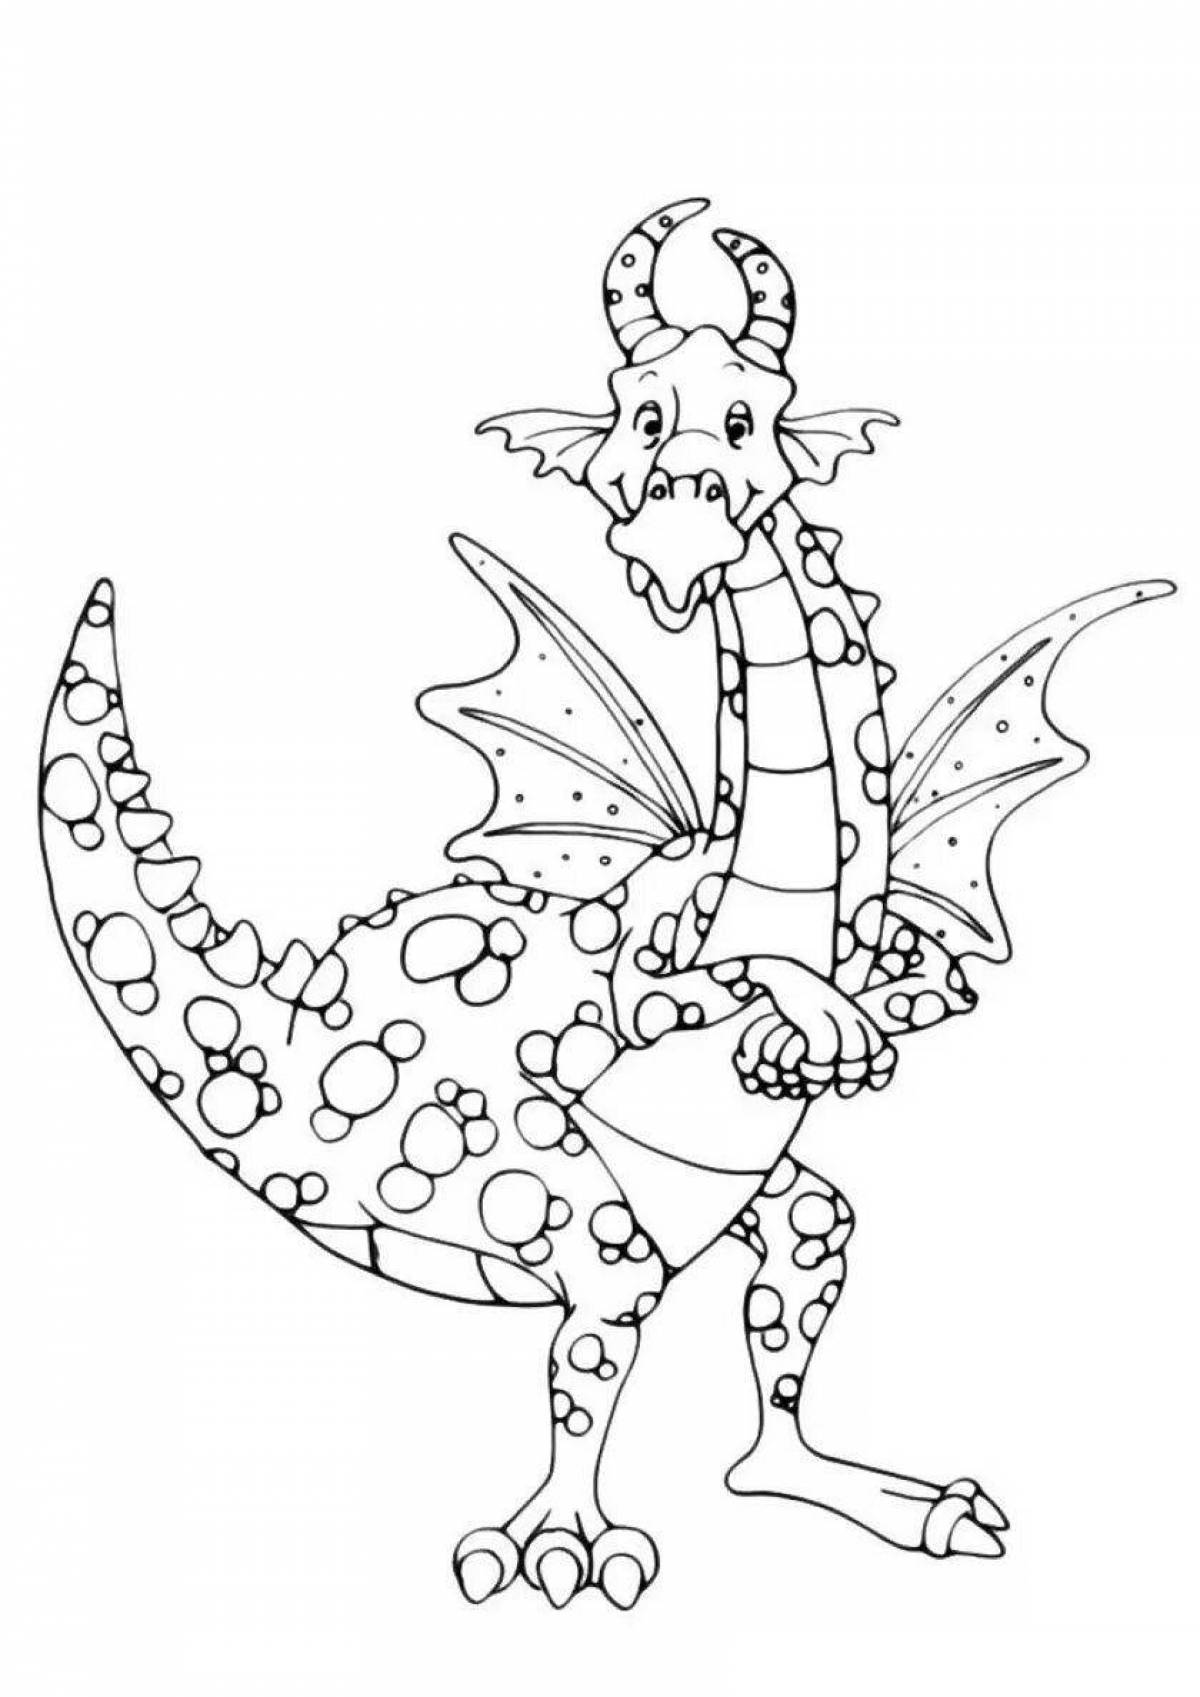 Великолепная раскраска дракон для детей 7 лет